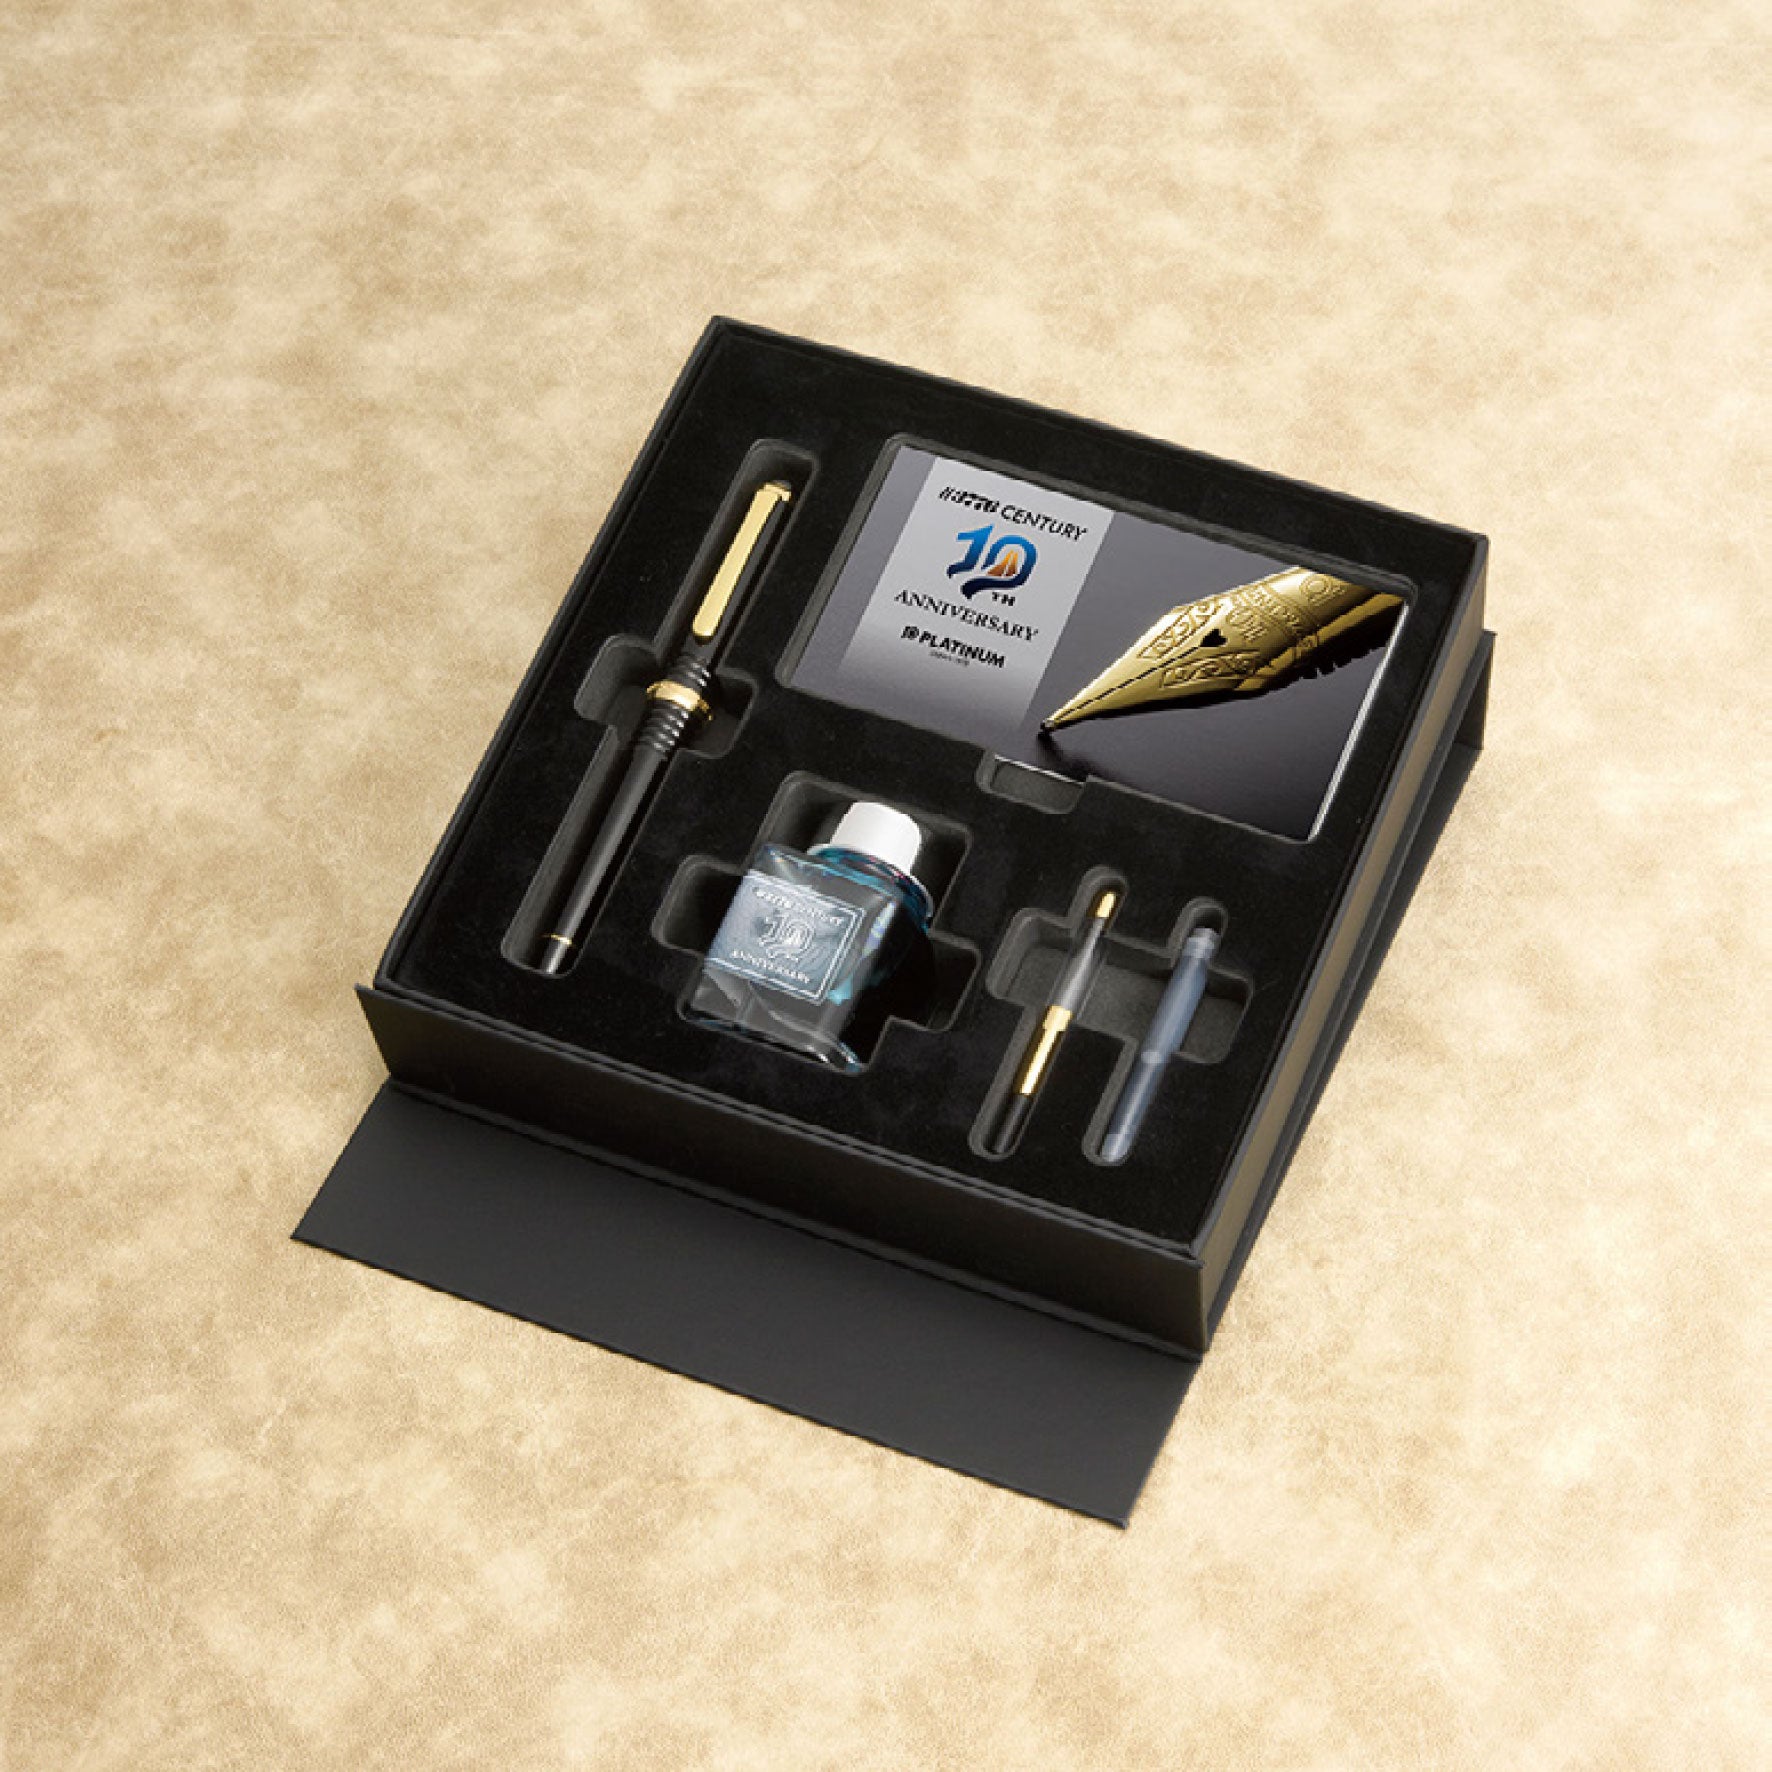 Platinum 10th Anniversary gift box